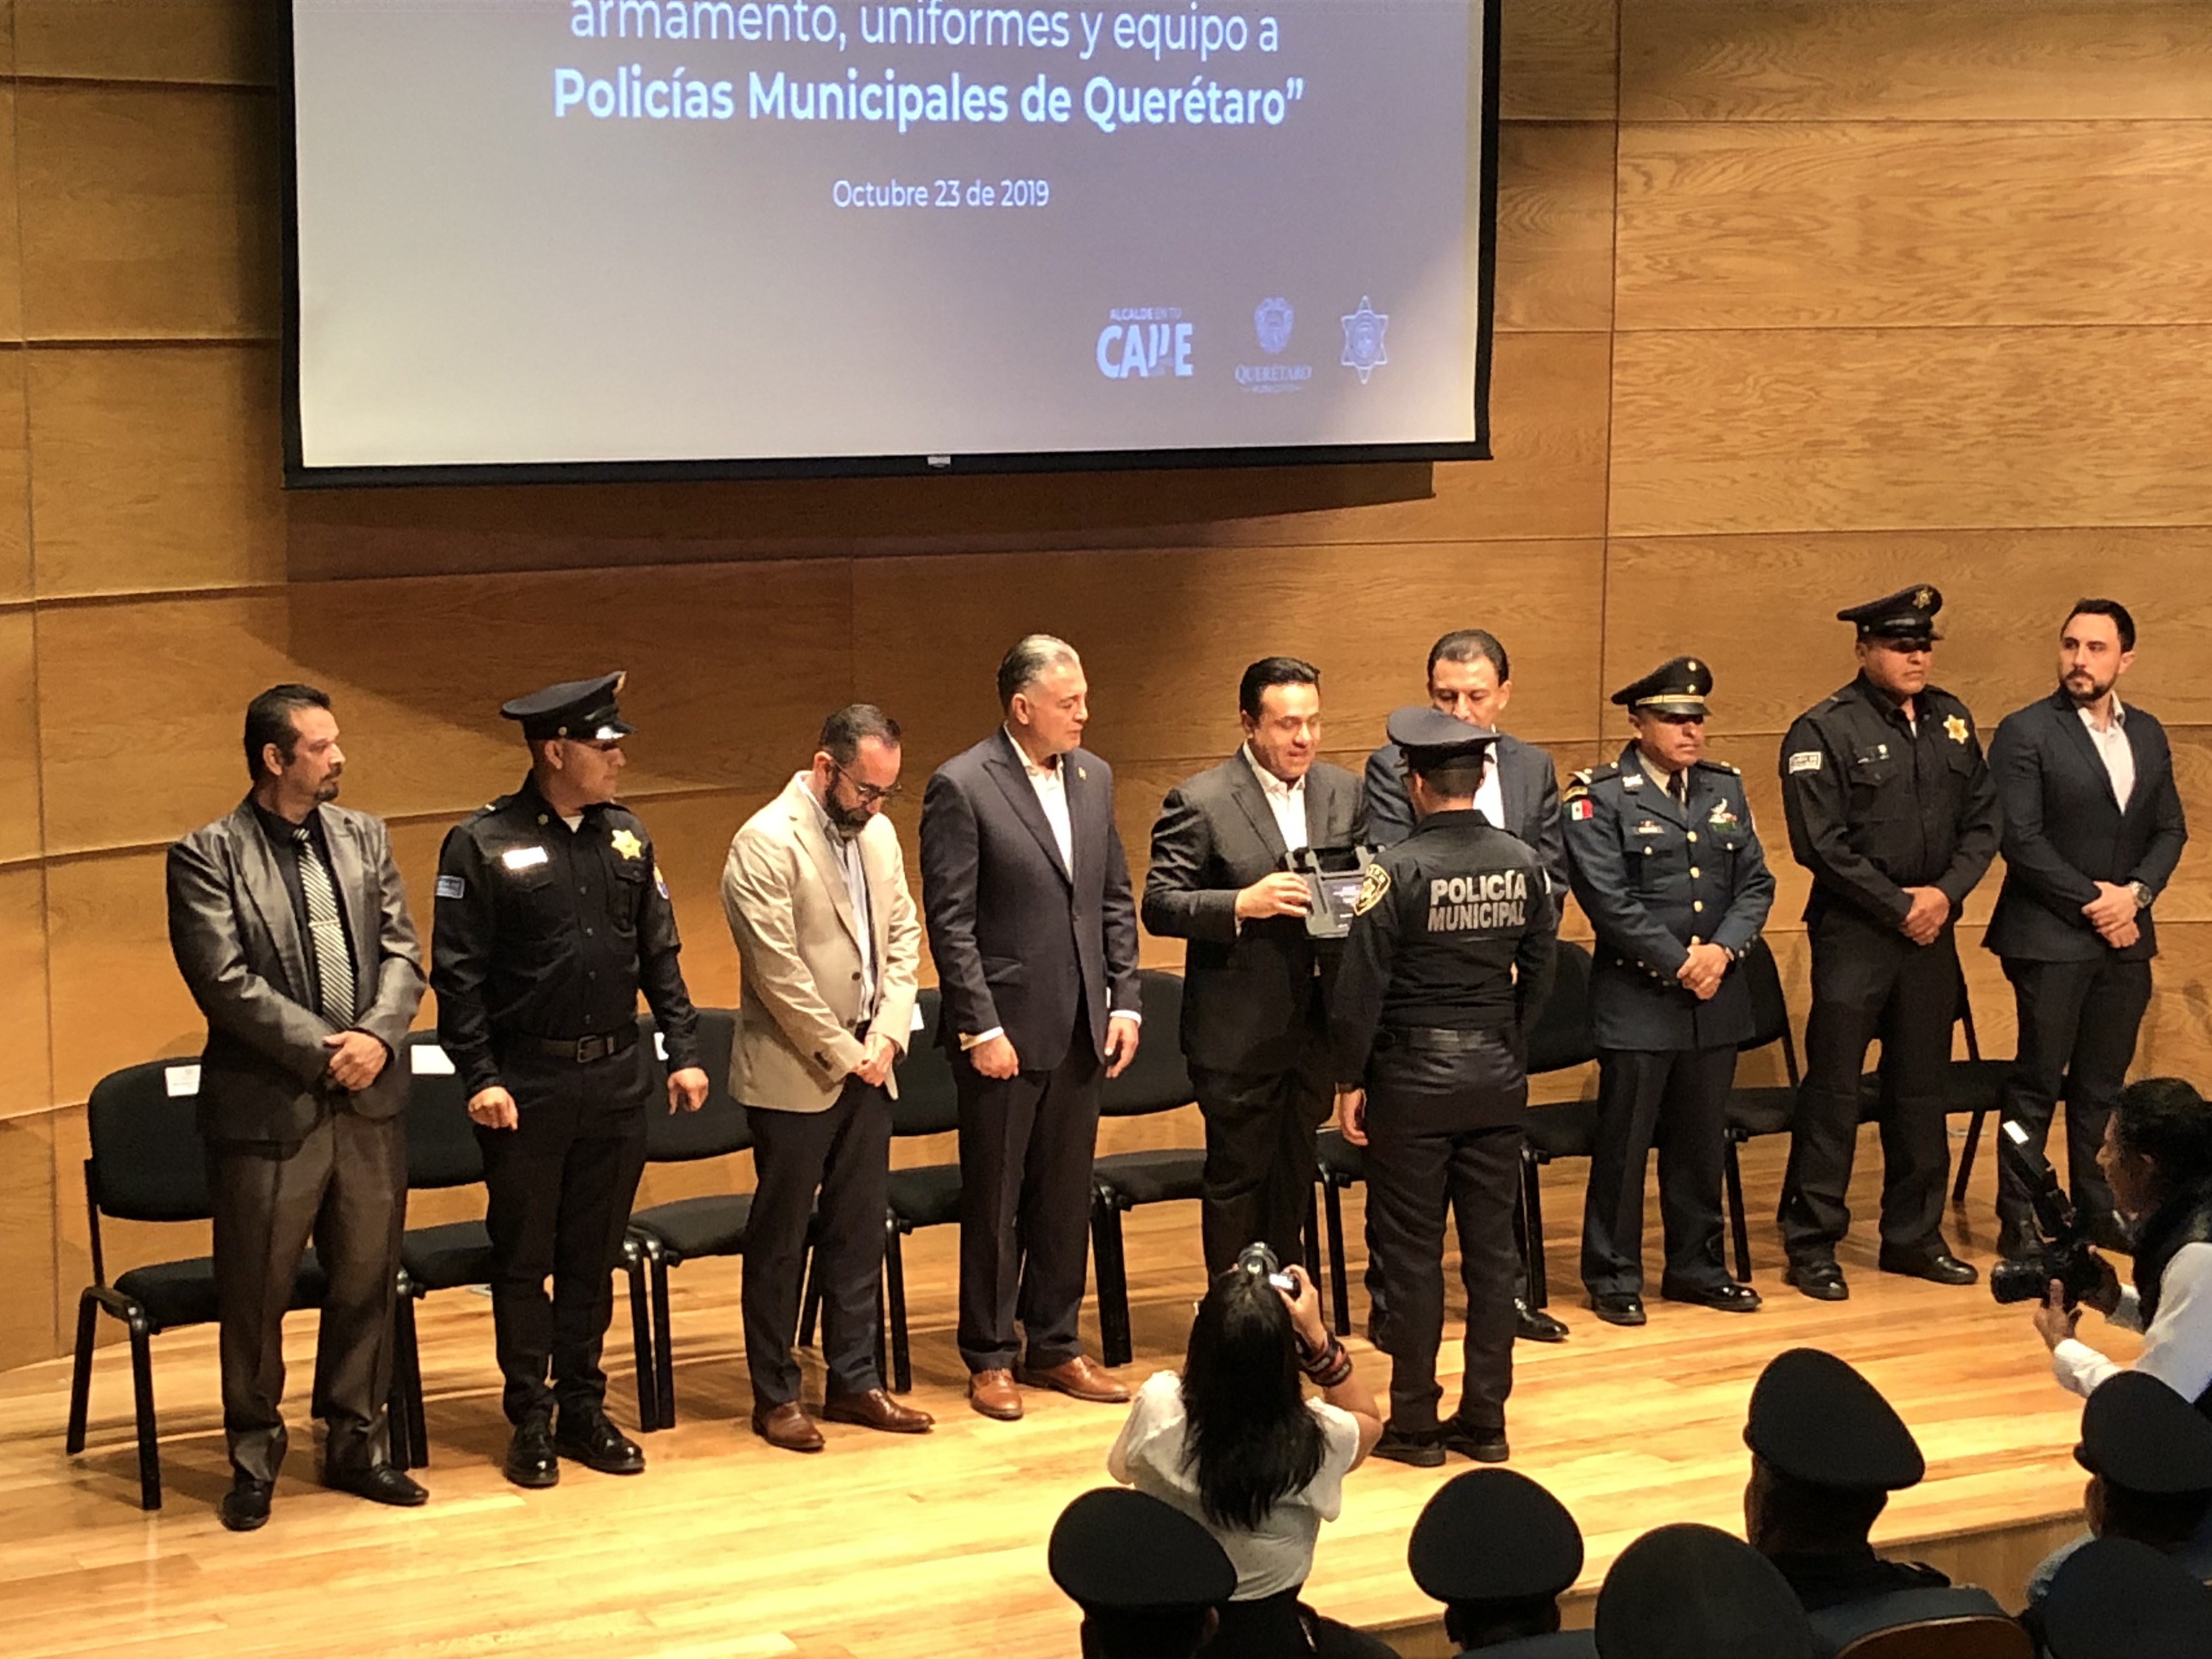  Luis Nava dota de reconocimientos, armas y uniformes a policías municipales